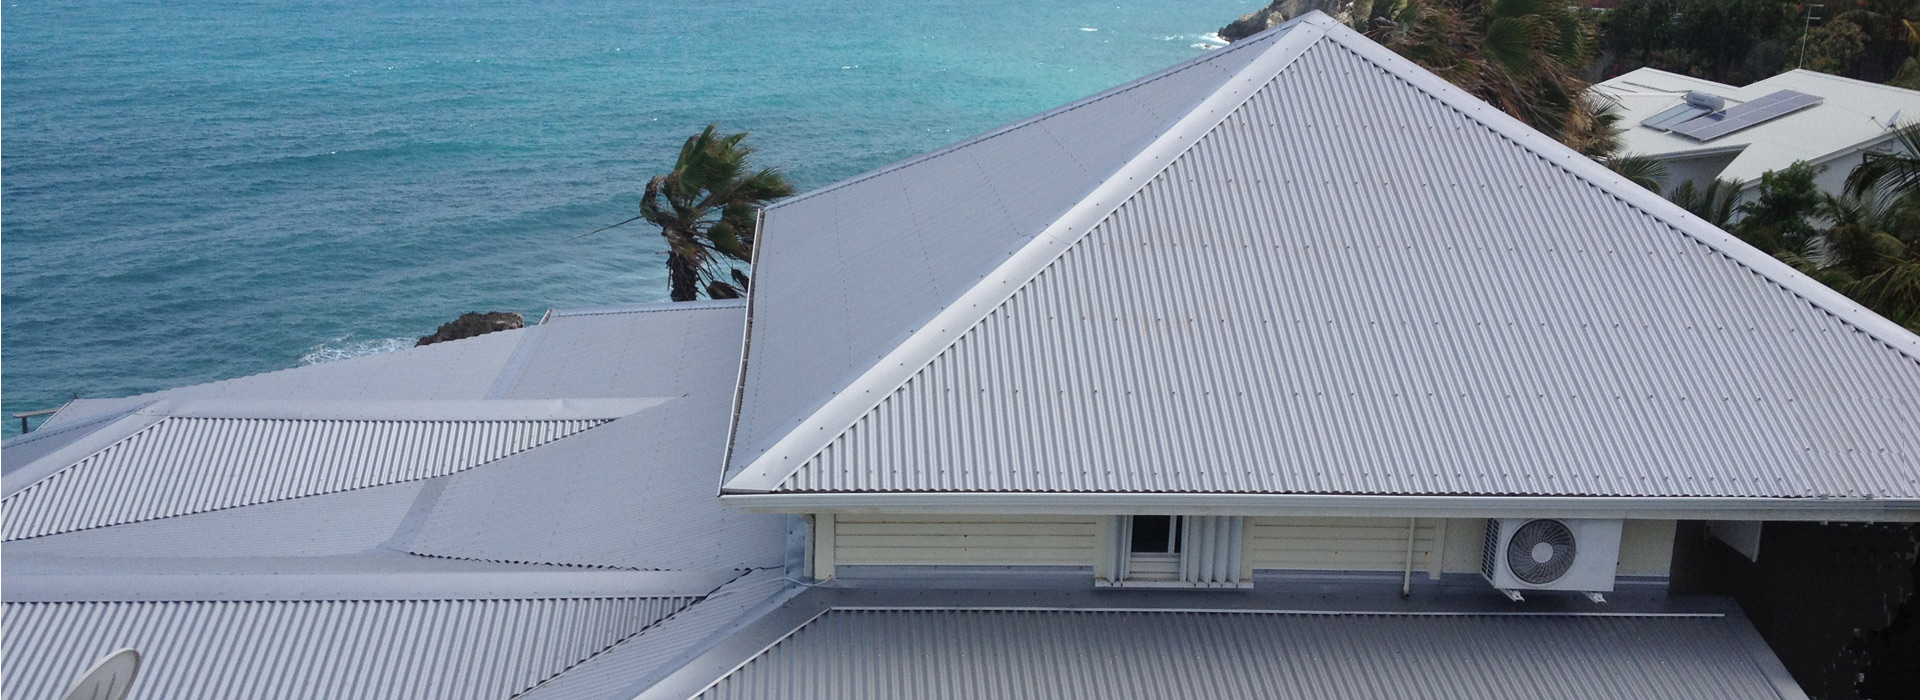 Réalisation de toiture neuve en tôle ondulée sur Le Gosier en Guadeloupe -  Couvreur pour rénovation de toiture à Baie-Mahault - PRO RÉNOVATION 971